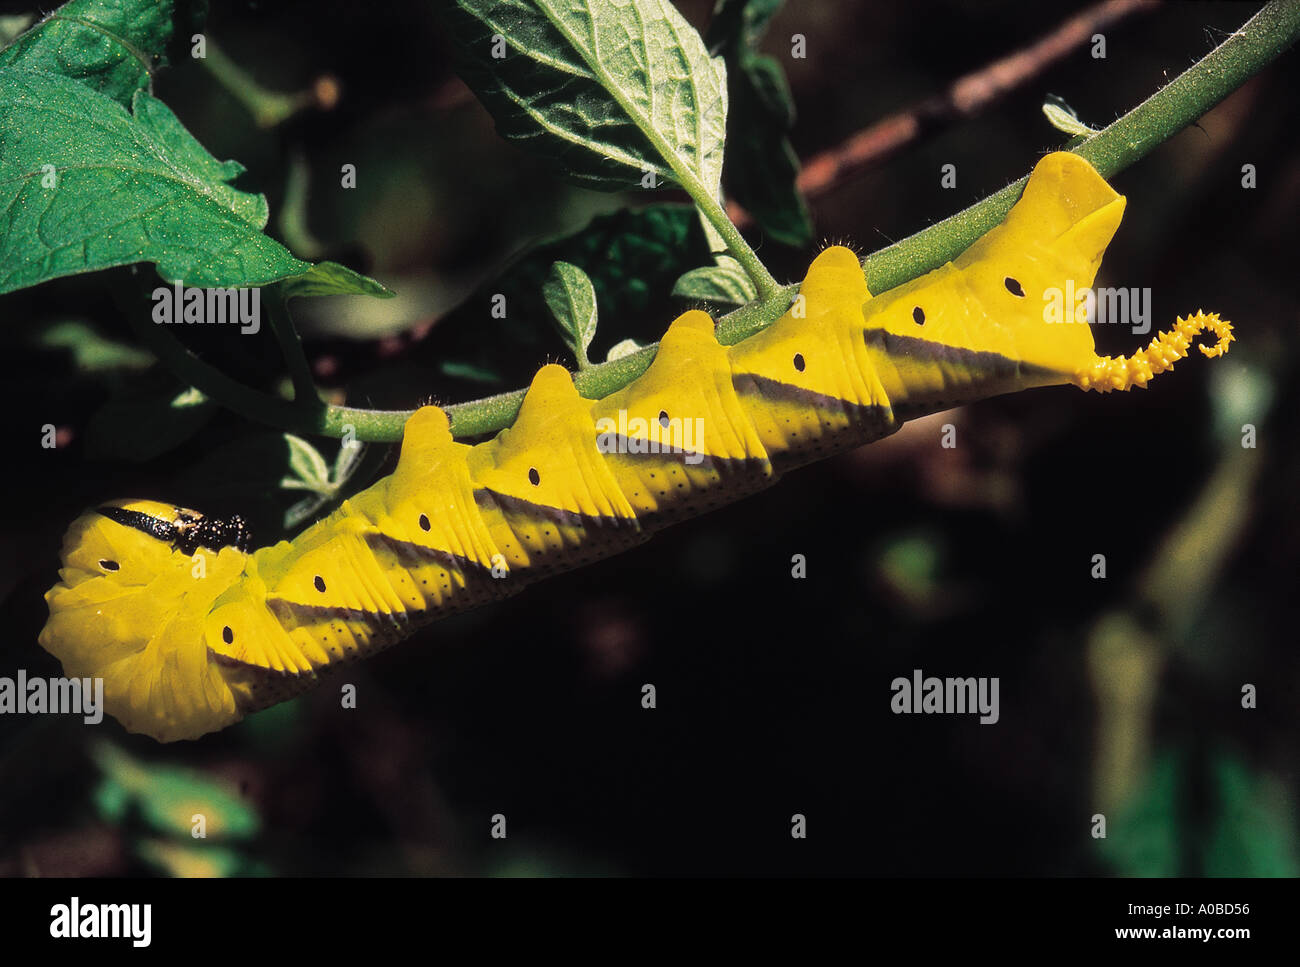 Yellow caterpillar. Stock Photo